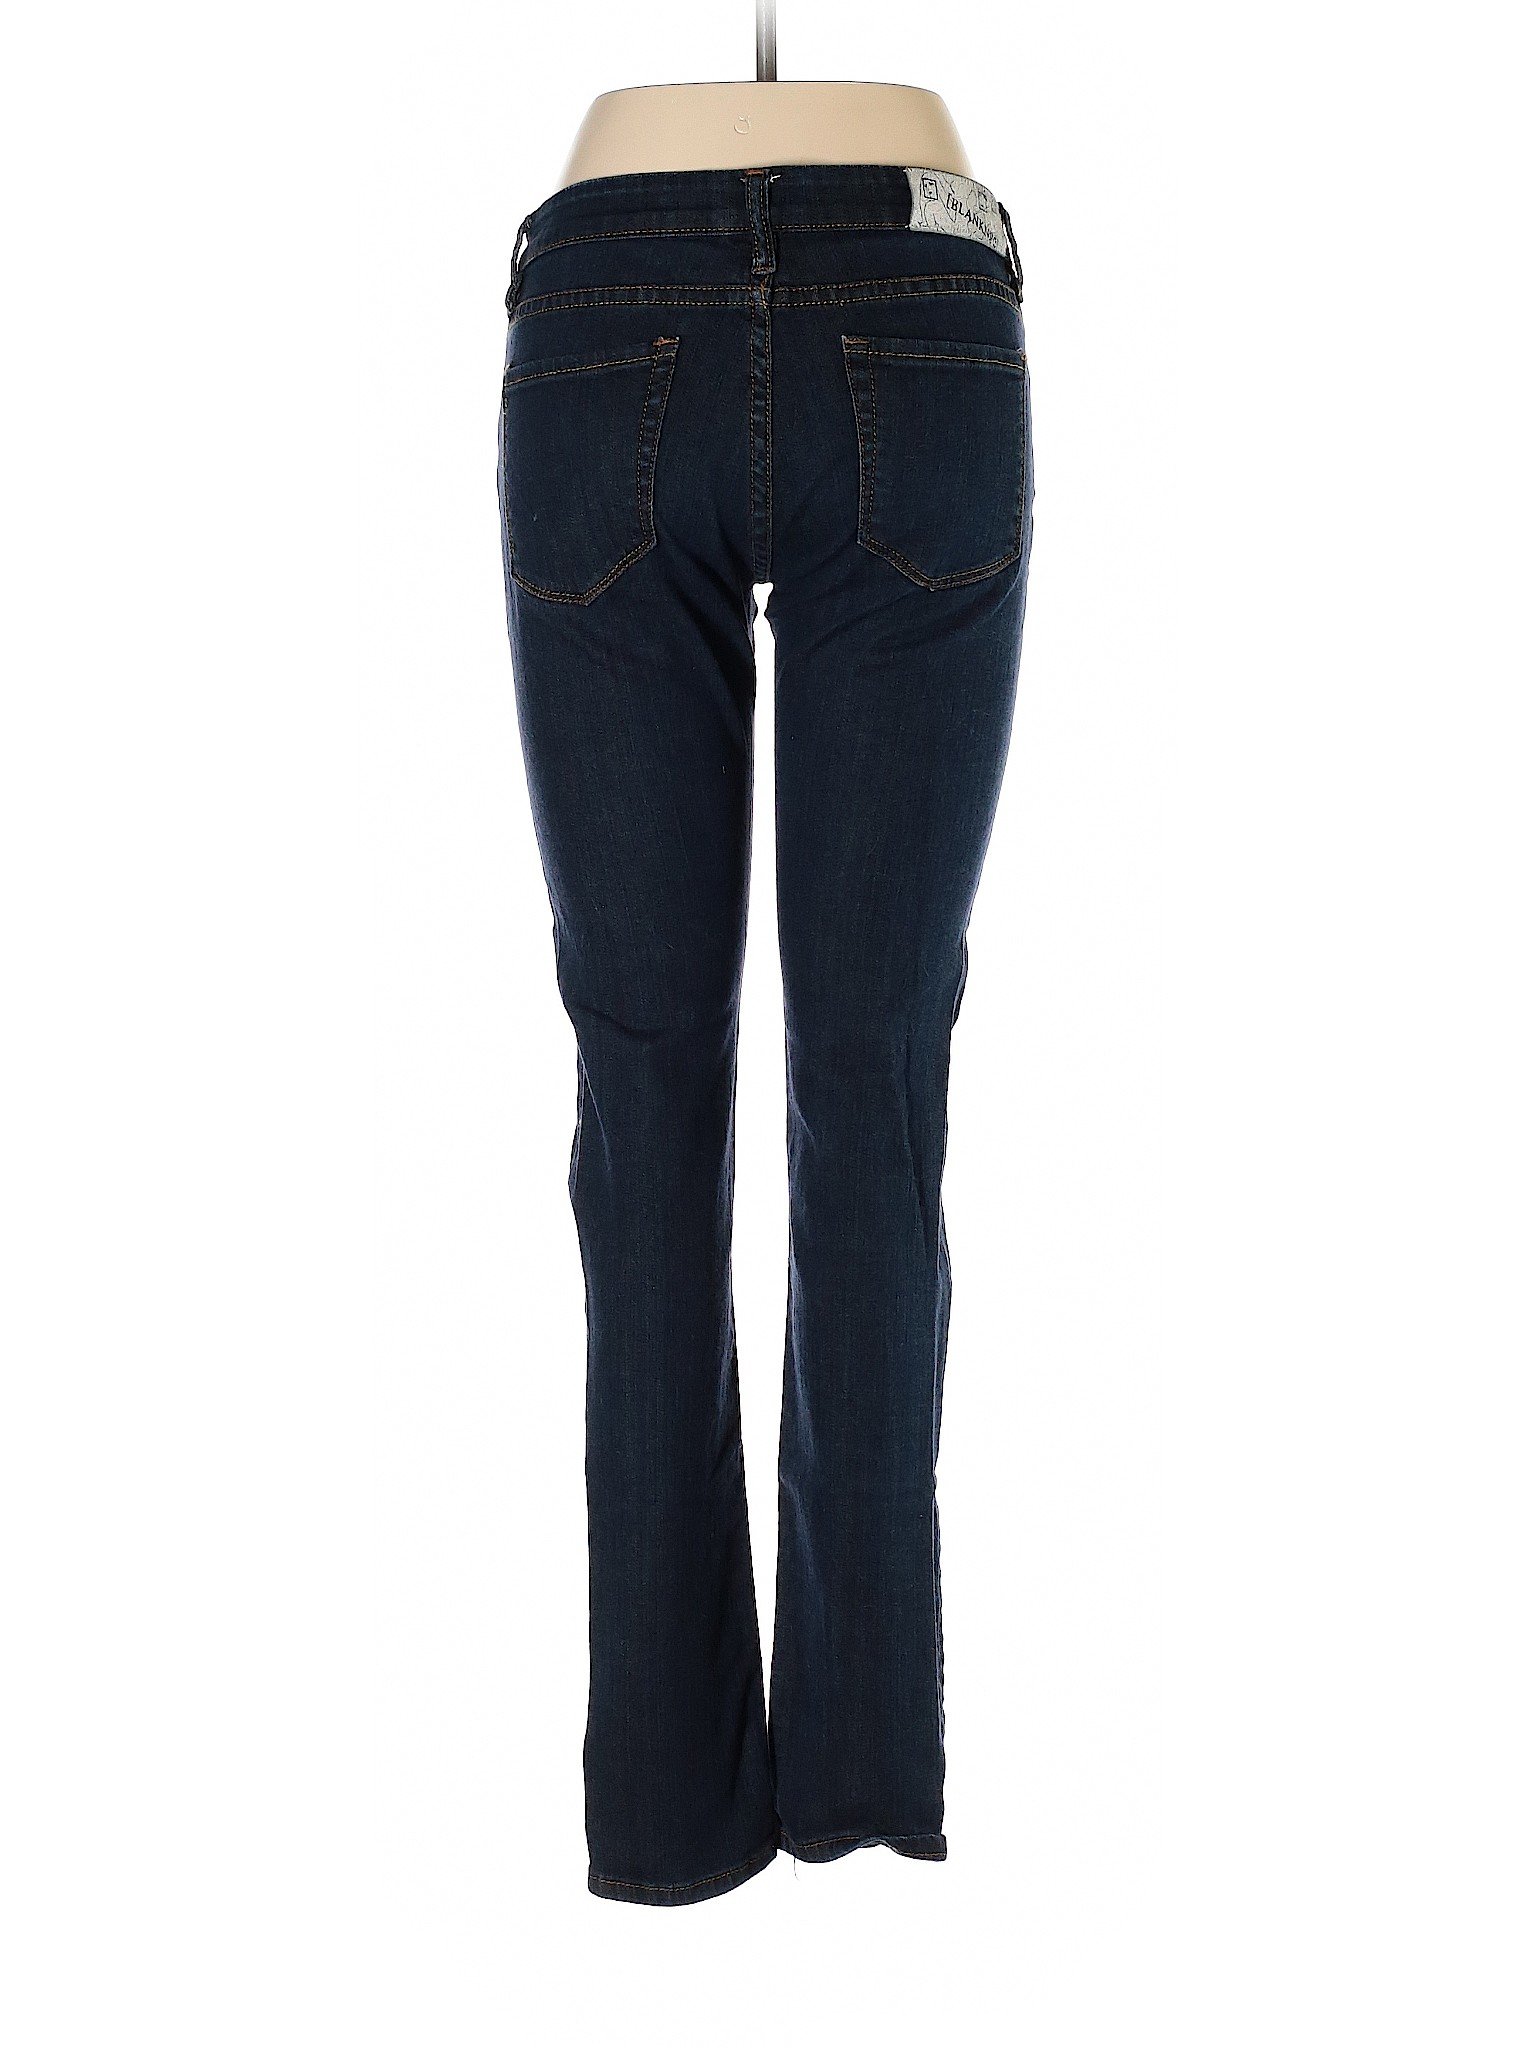 Blank NYC Women Blue Jeans 28W | eBay